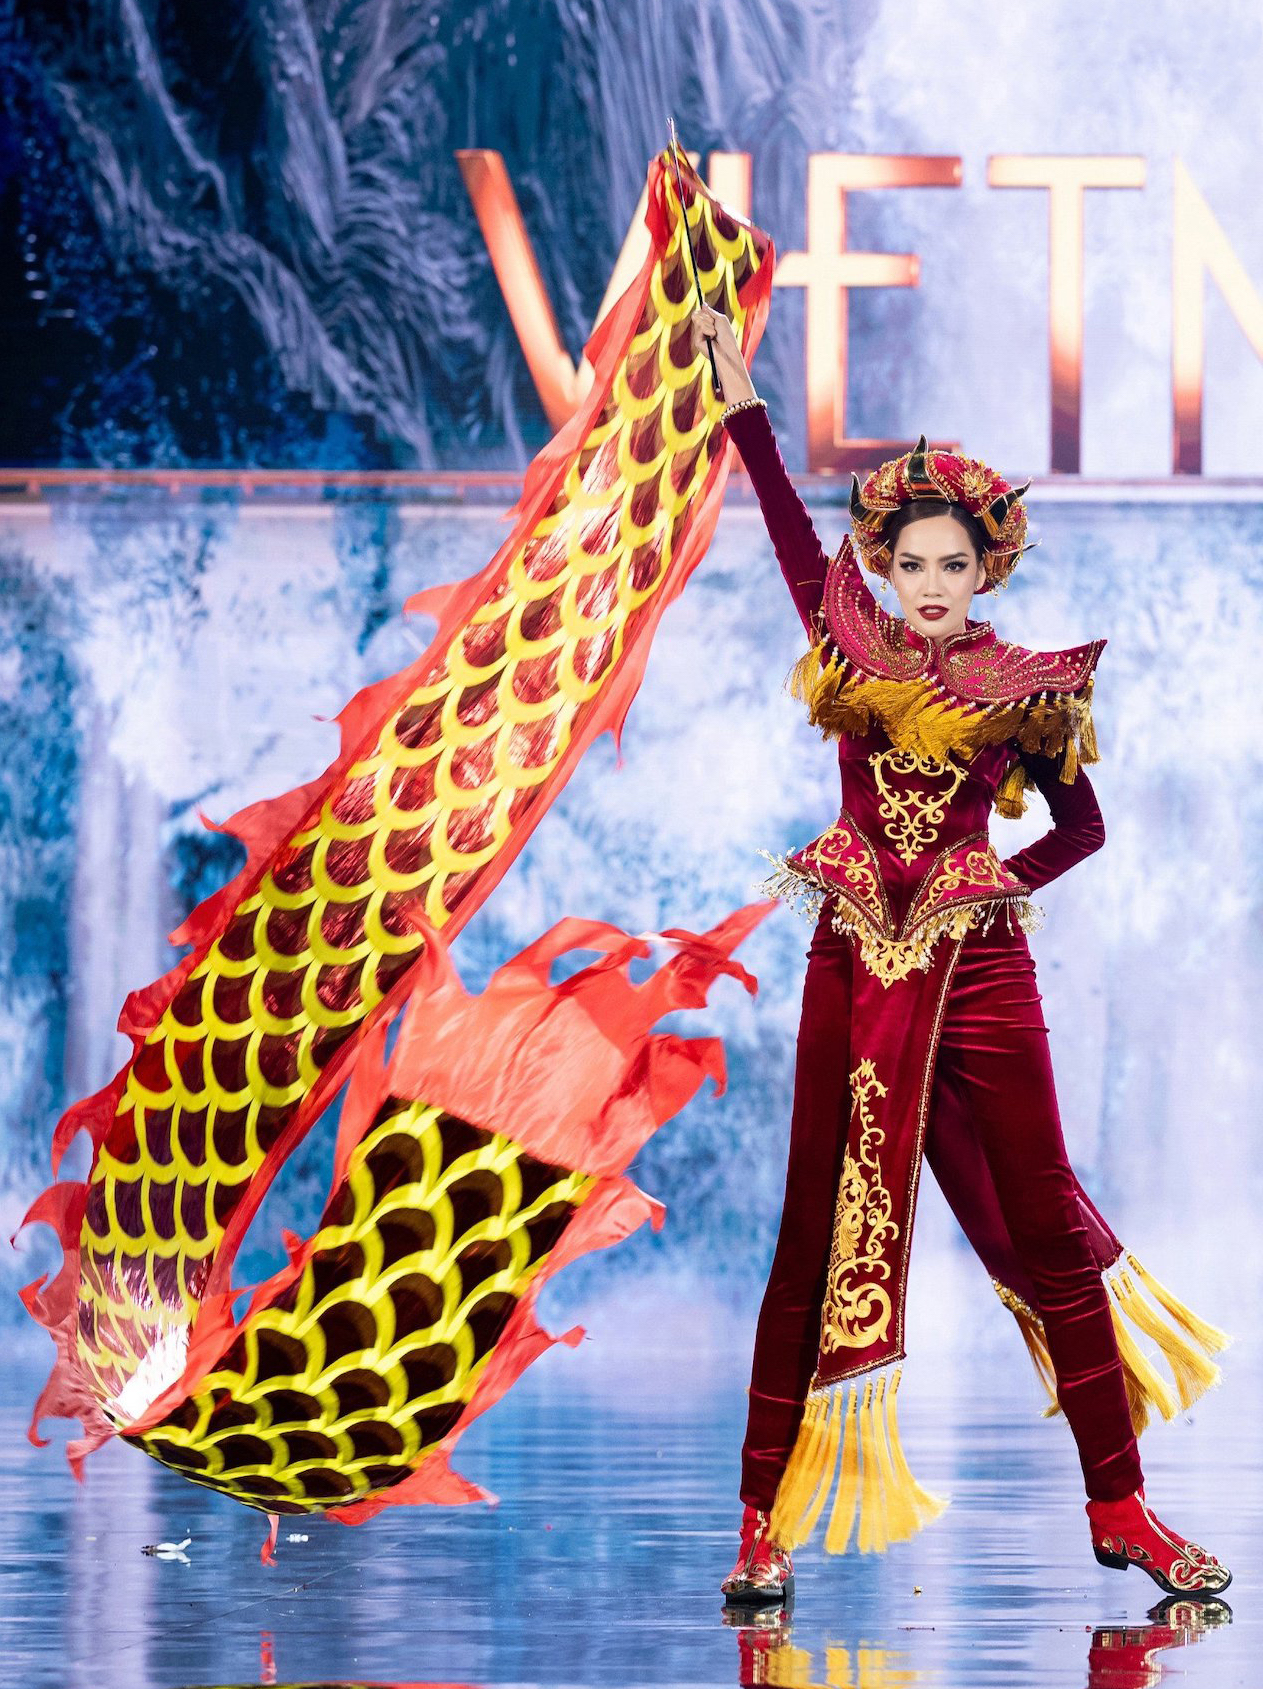 Lê Hoàng Phương bùng nổ tại đêm thi trang phục dân tộc Miss Grand International - Ảnh 4.